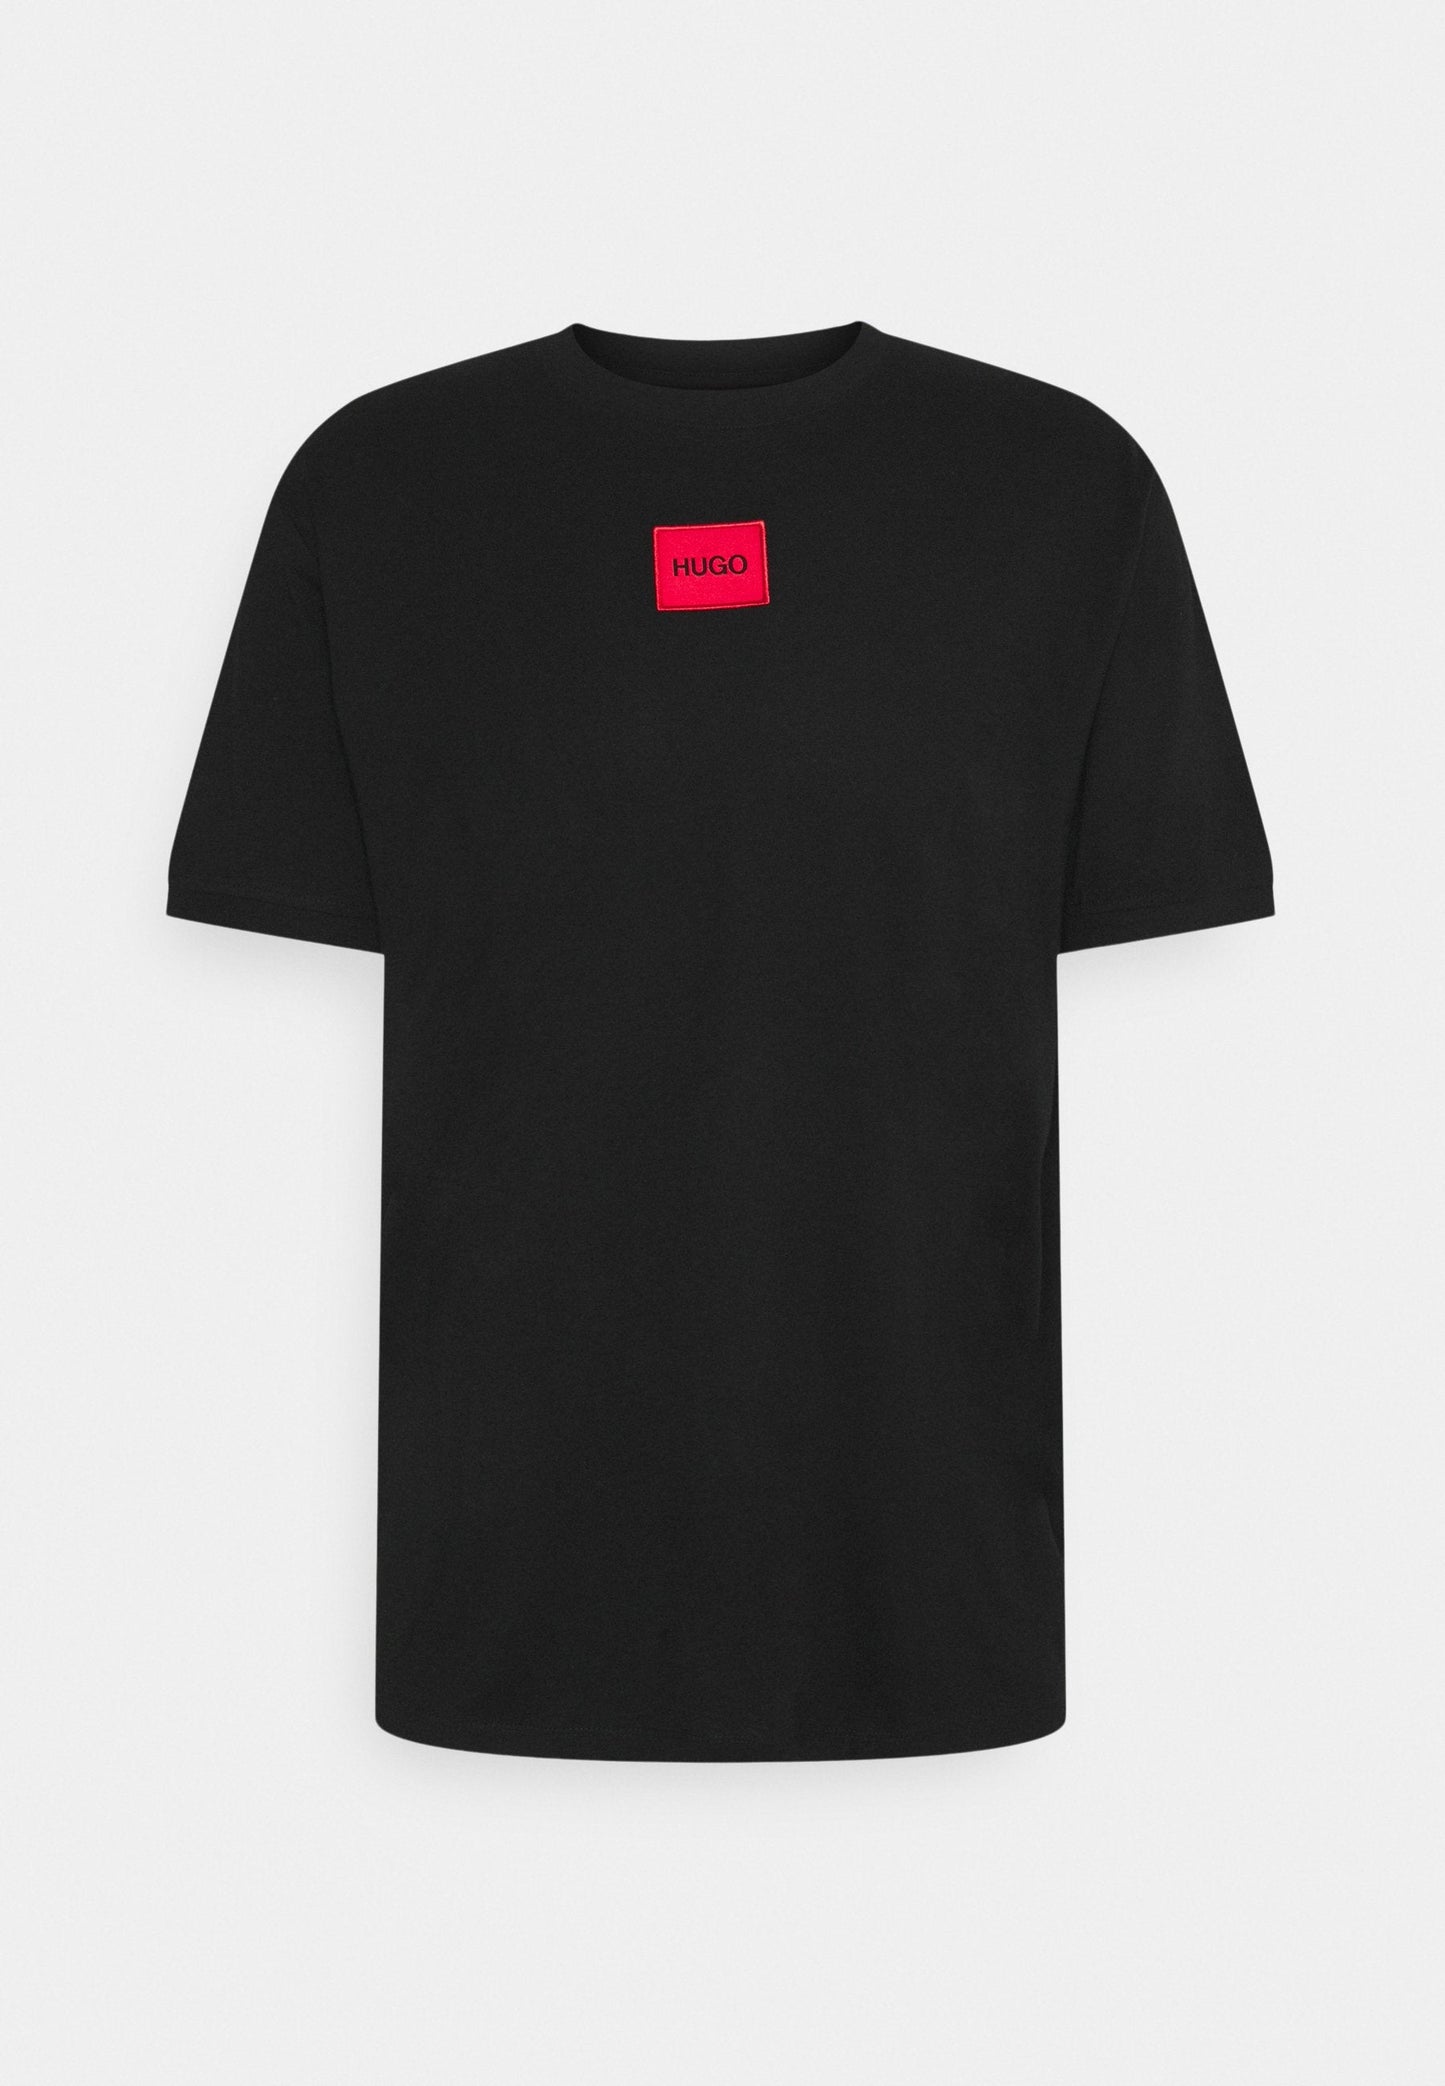 HUGO Diragolino 212 T-Shirt - 001 Black - Escape Menswear